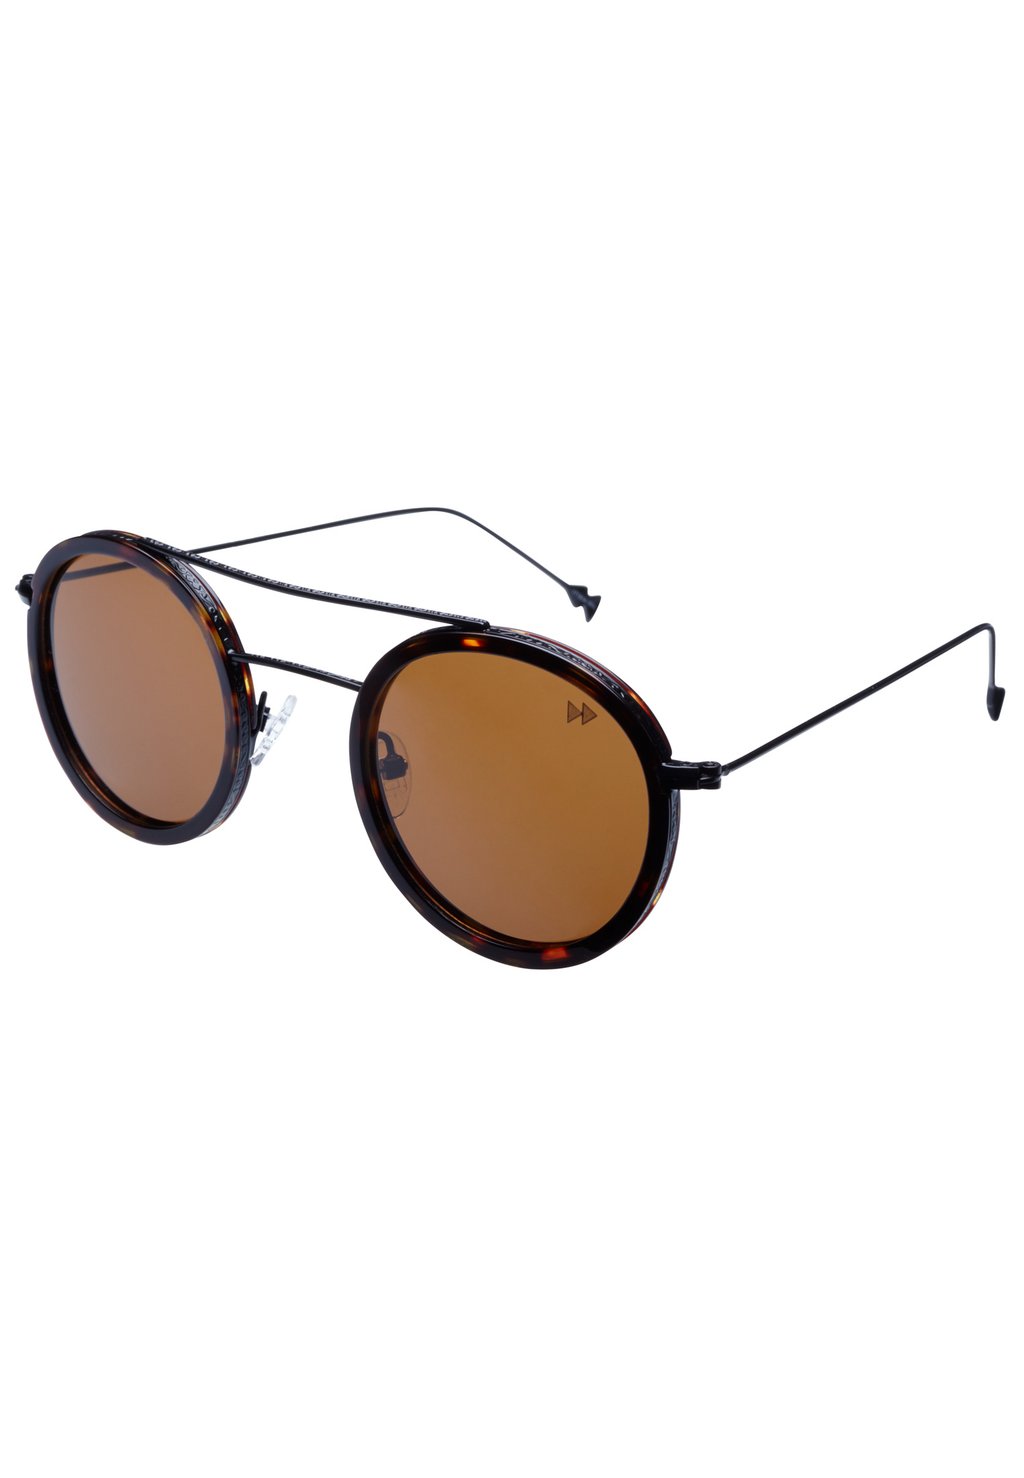 Солнцезащитные очки Sunheroes, коричневый меланж рюкзак меланж коричневый